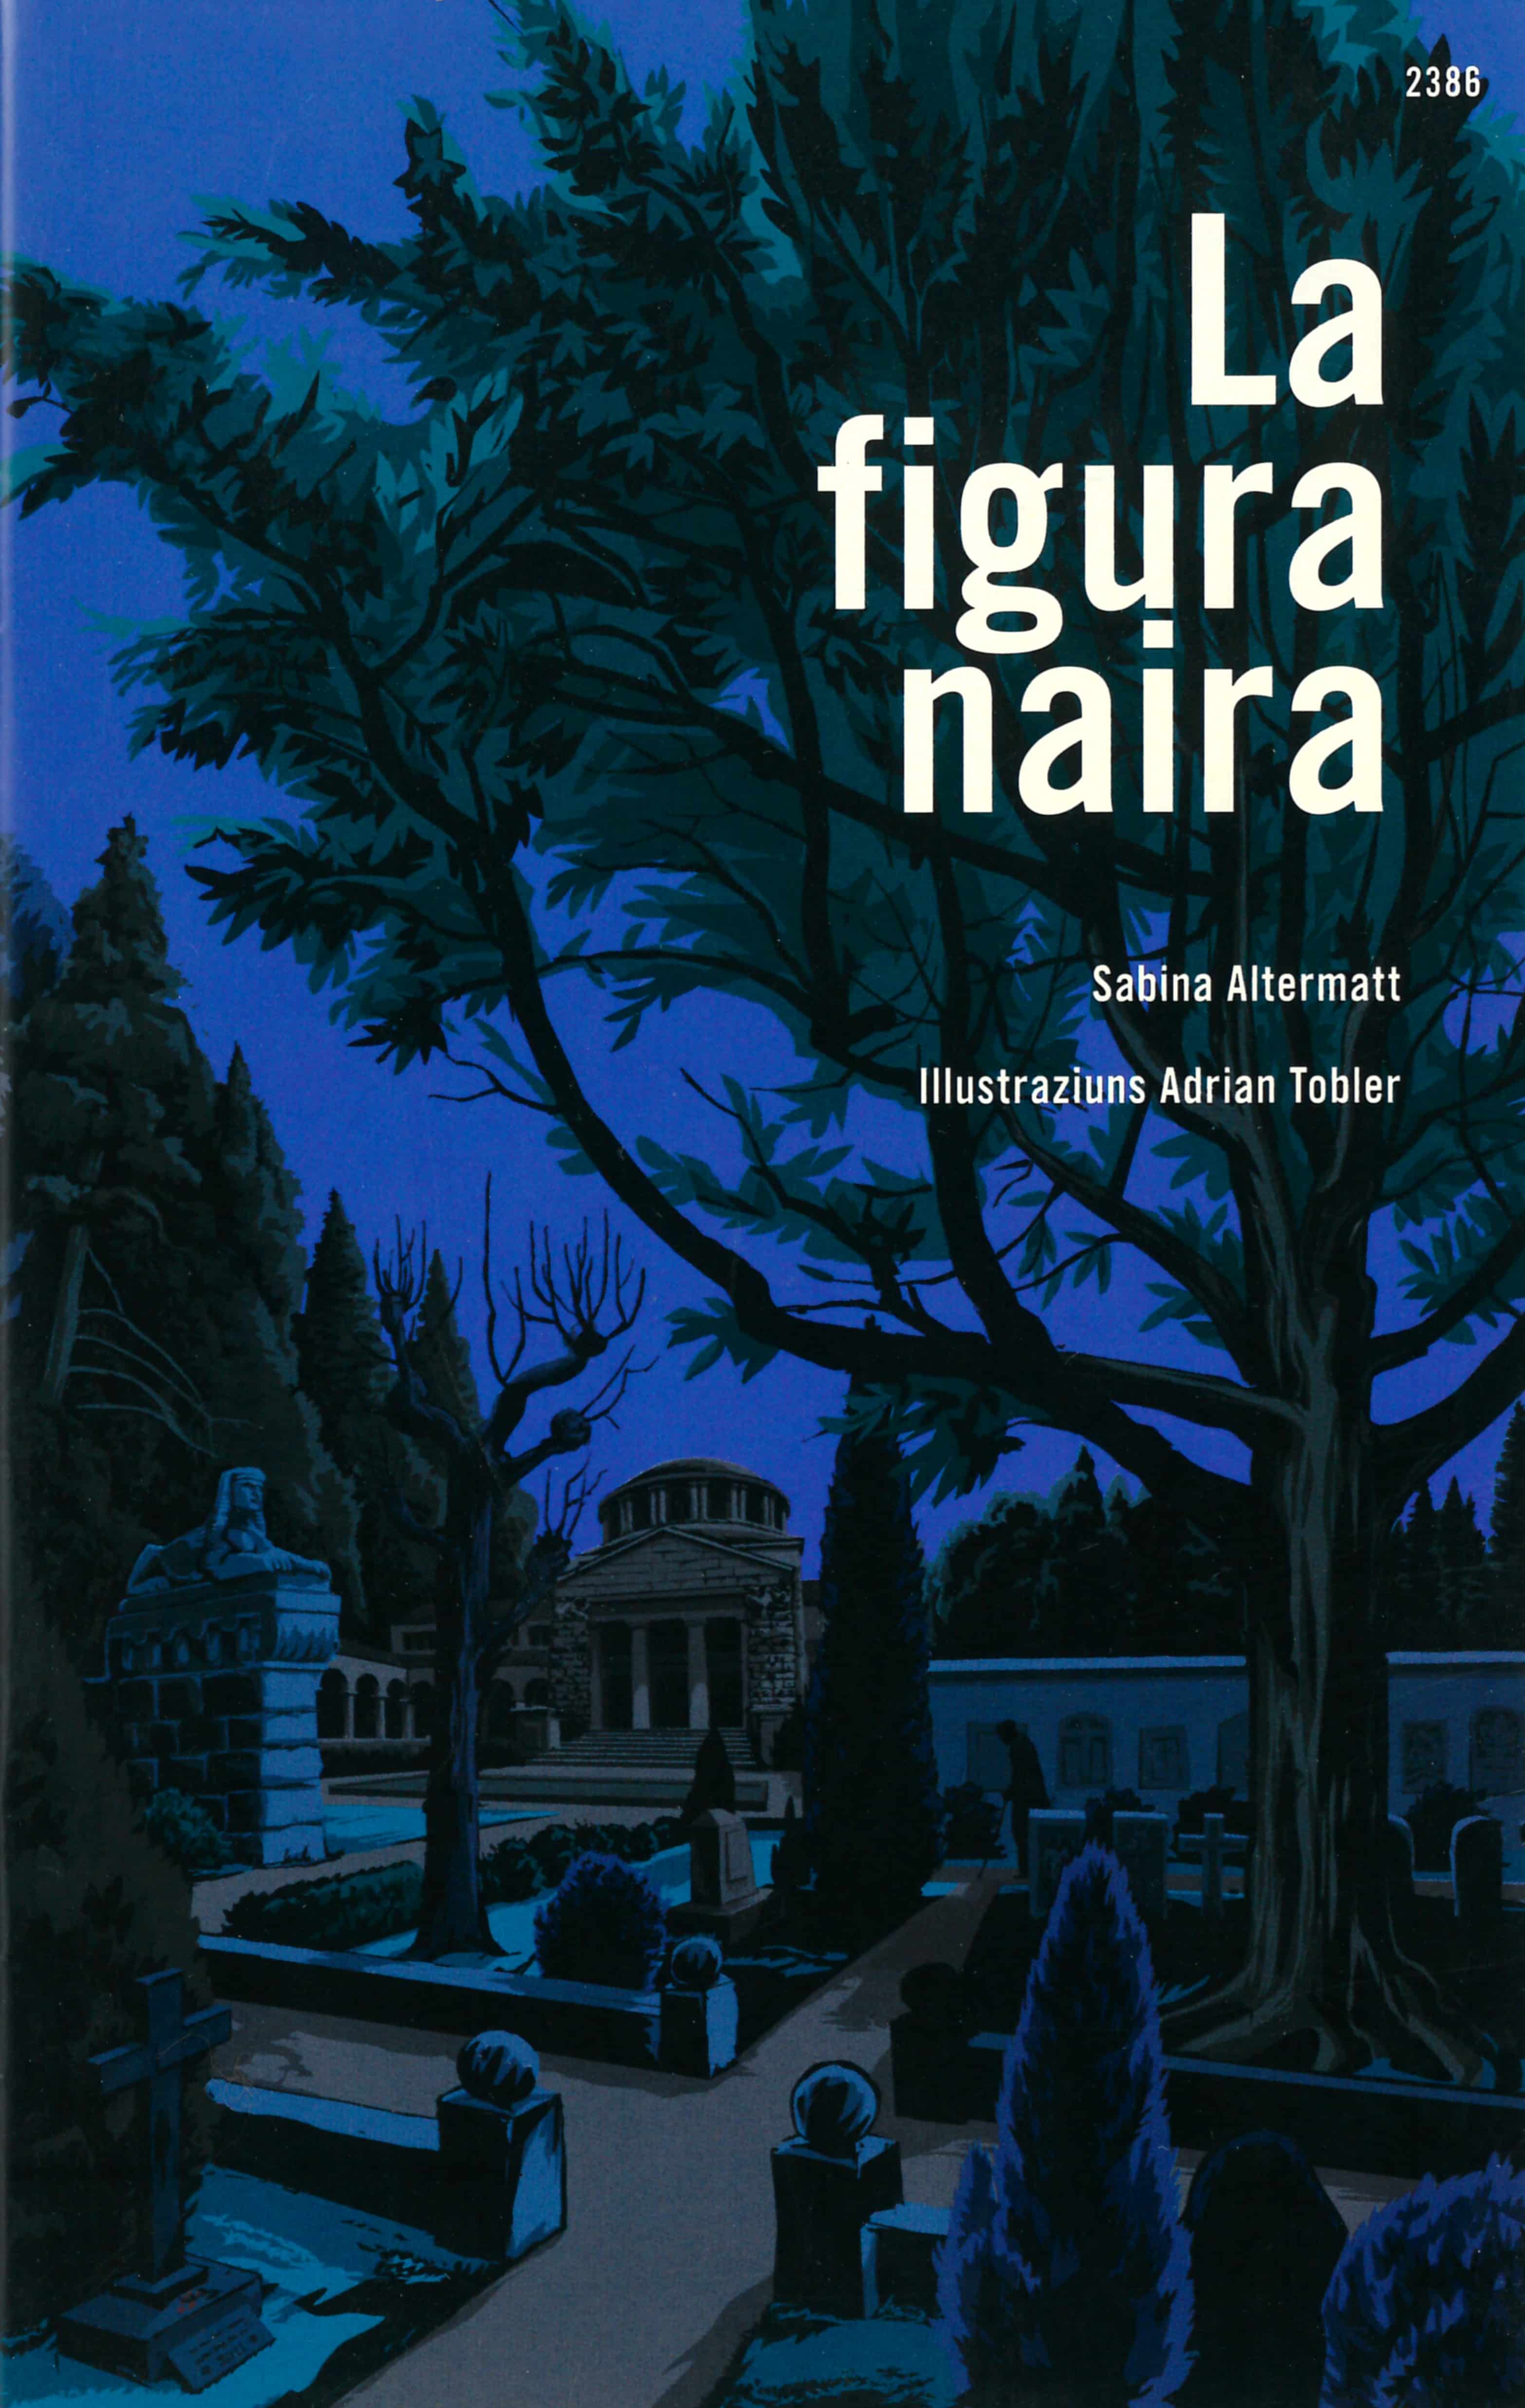 La figura naira, ein Jugendbuch von Sabina Altermatt, Illustration von Adrian Tobler, SJW Verlag, Krimi